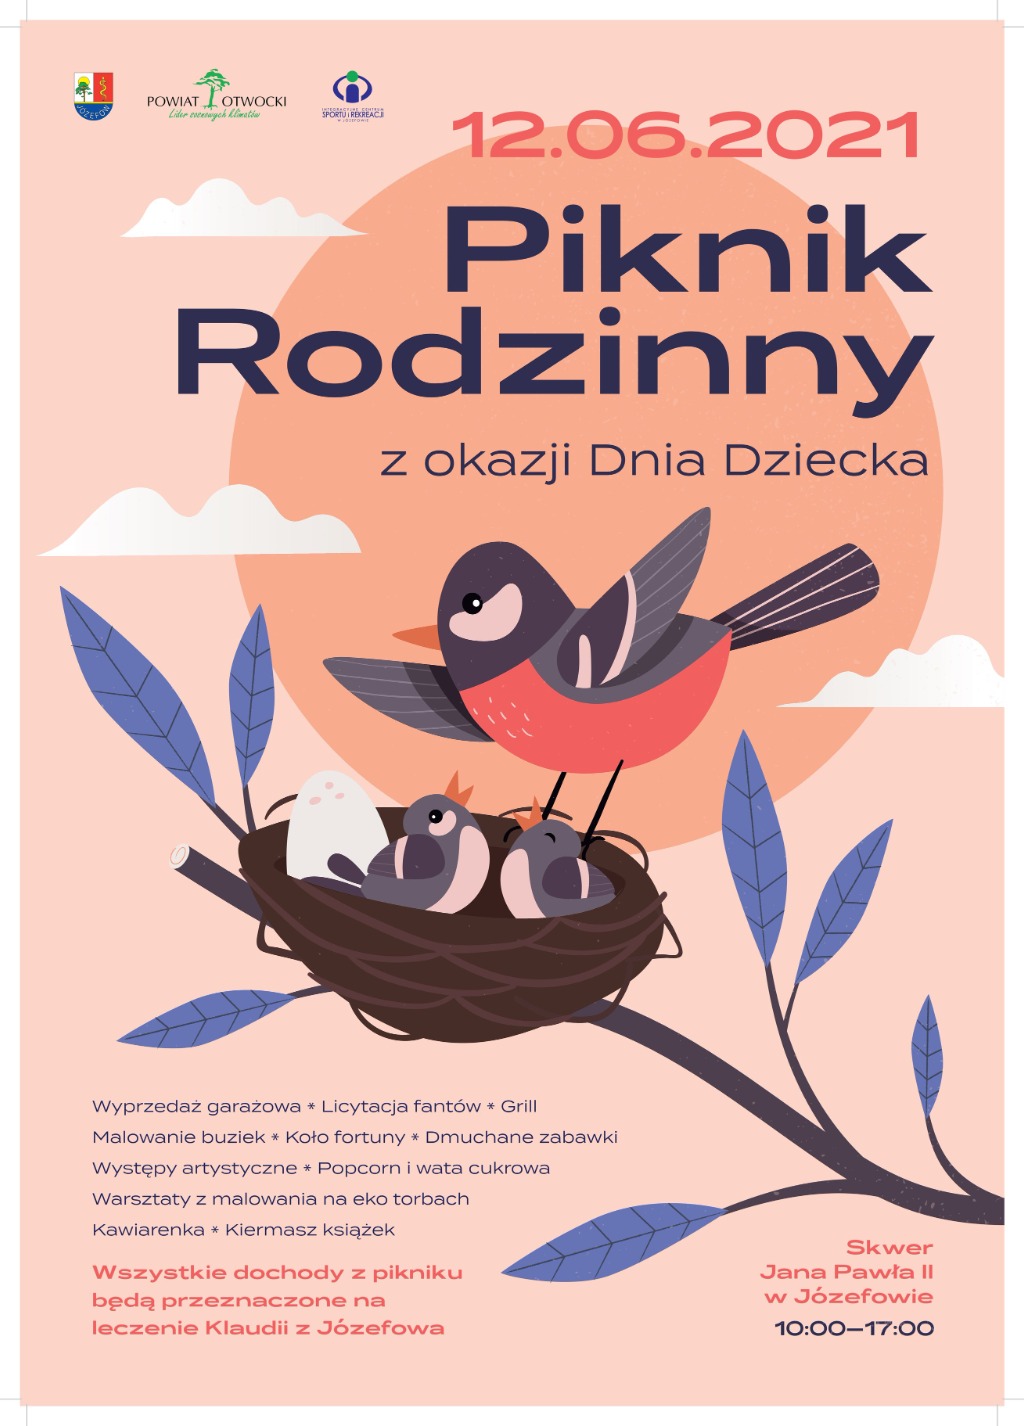 Rysunek ptaków w gnieździe na różowym tle. Wokół informacje na temat pikniku.